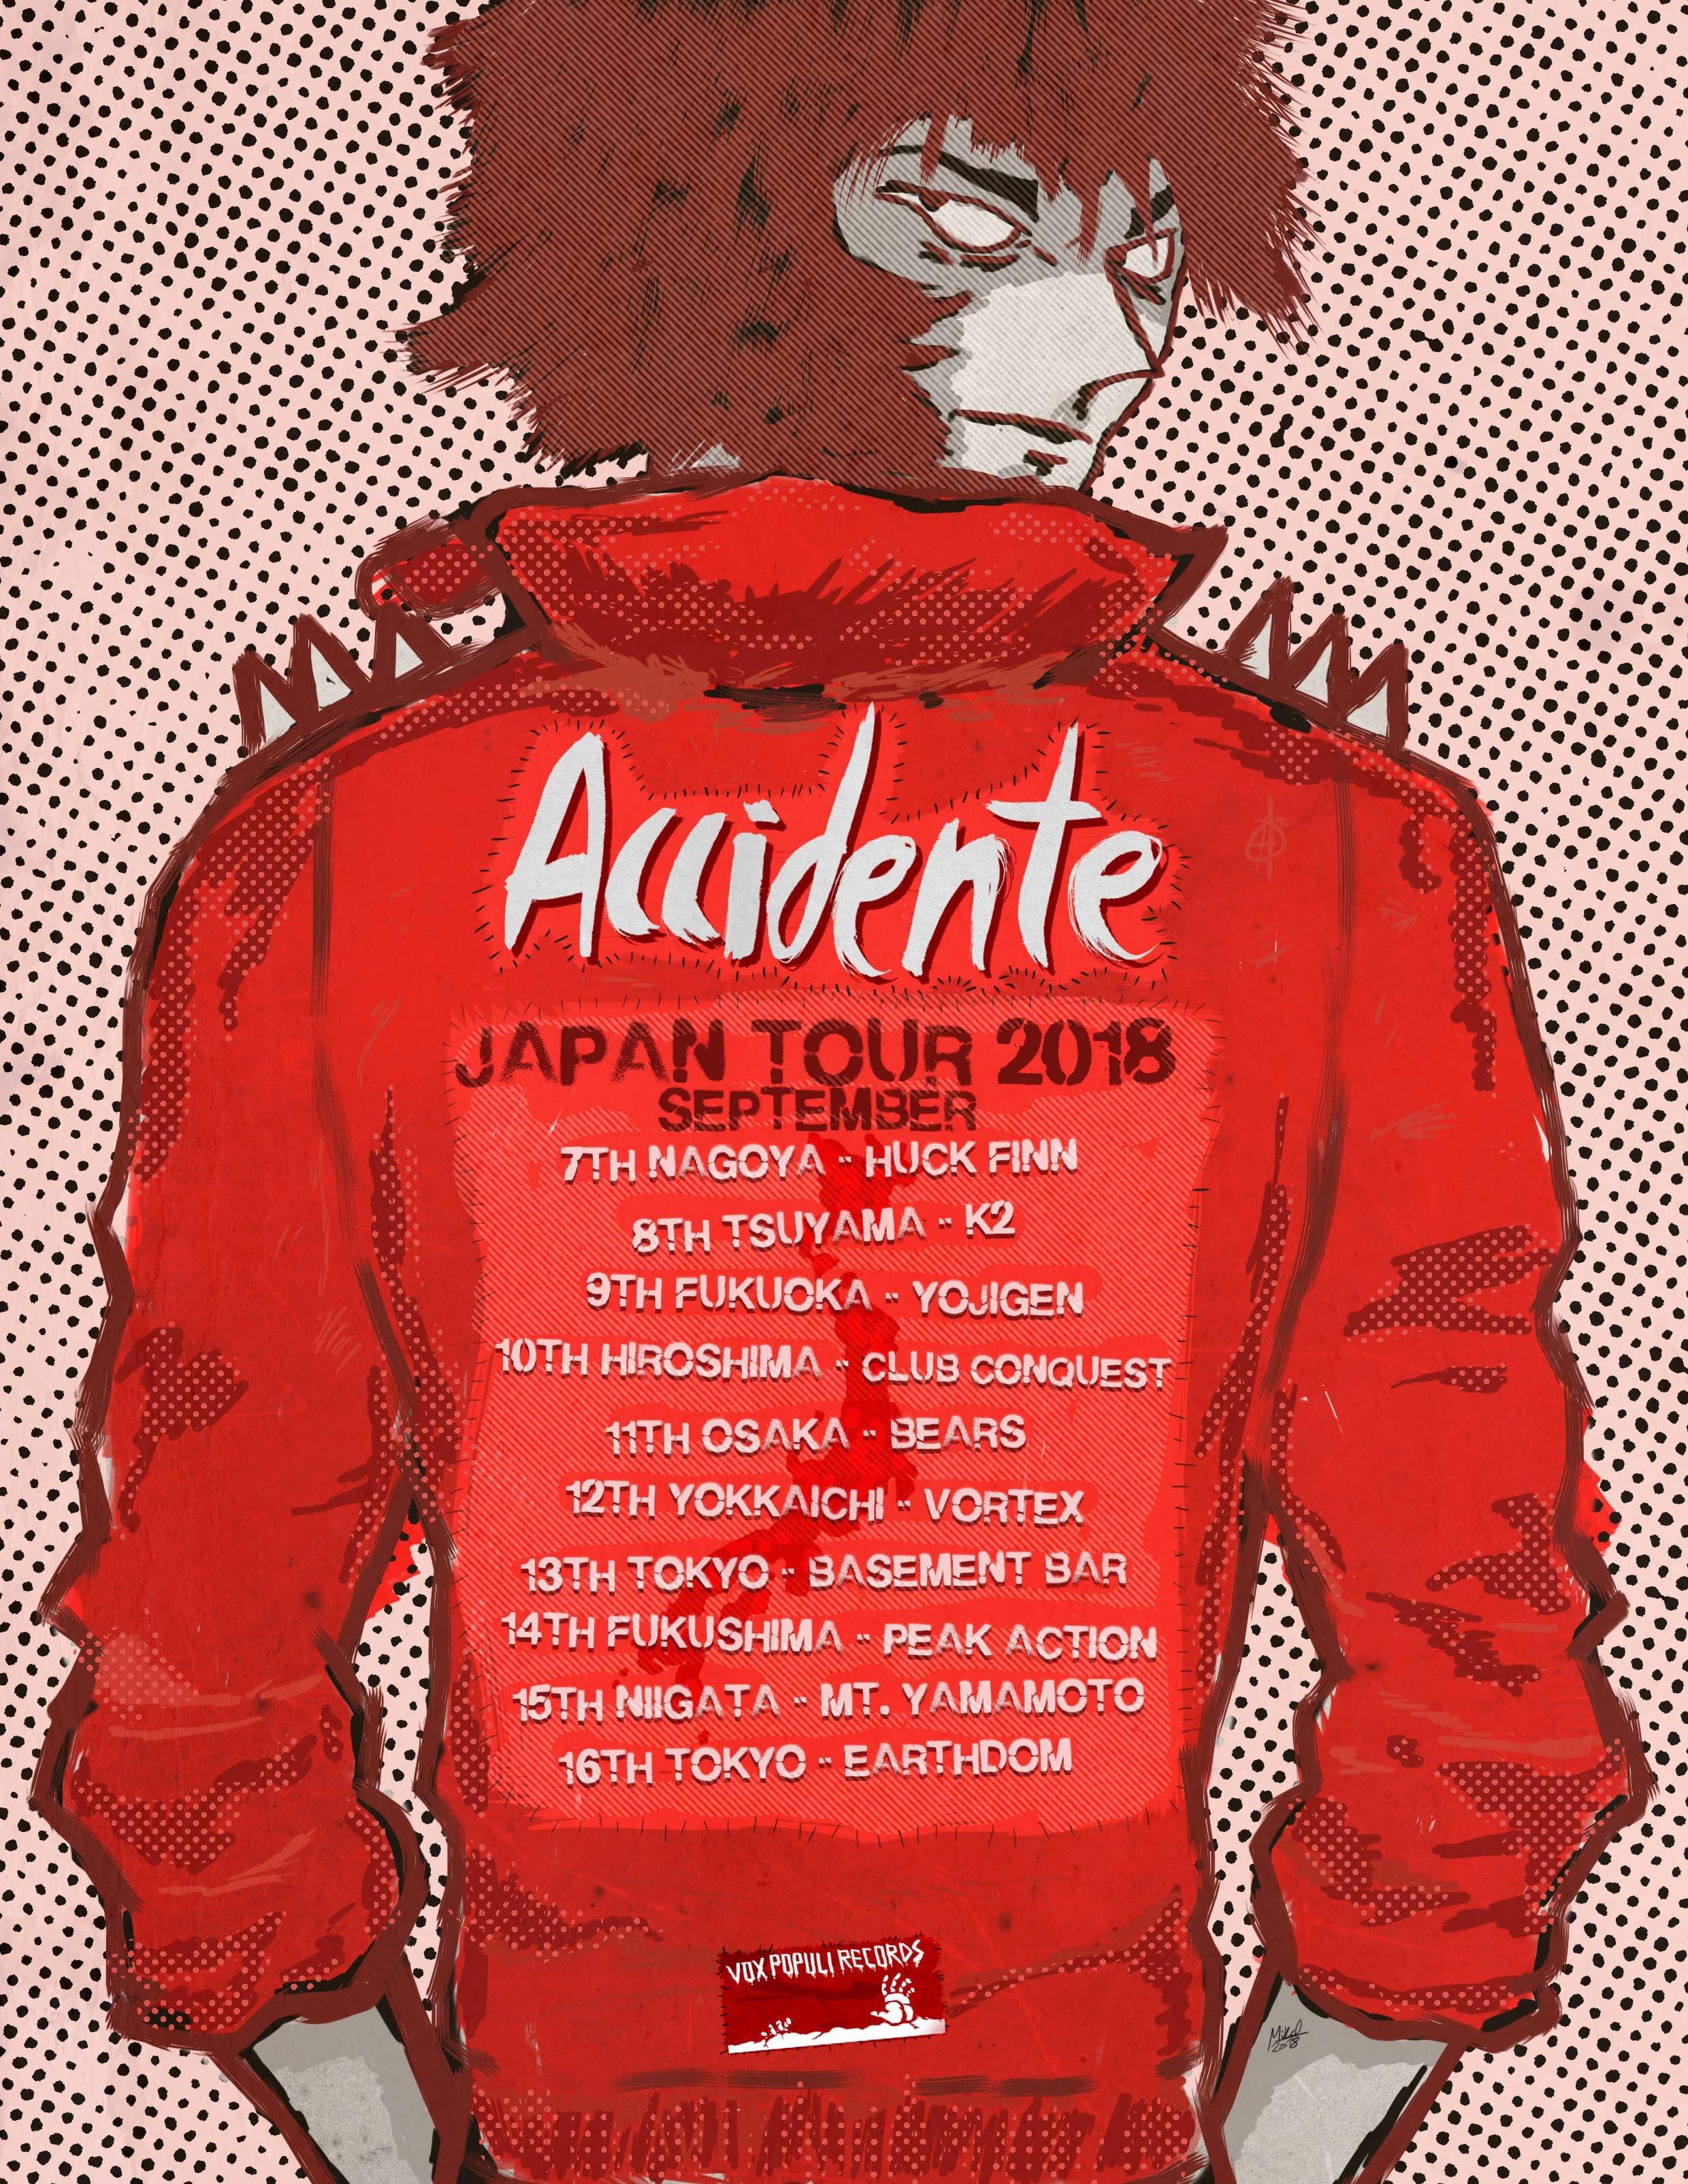 ACCIDNETE JAPAN TOUR 2018